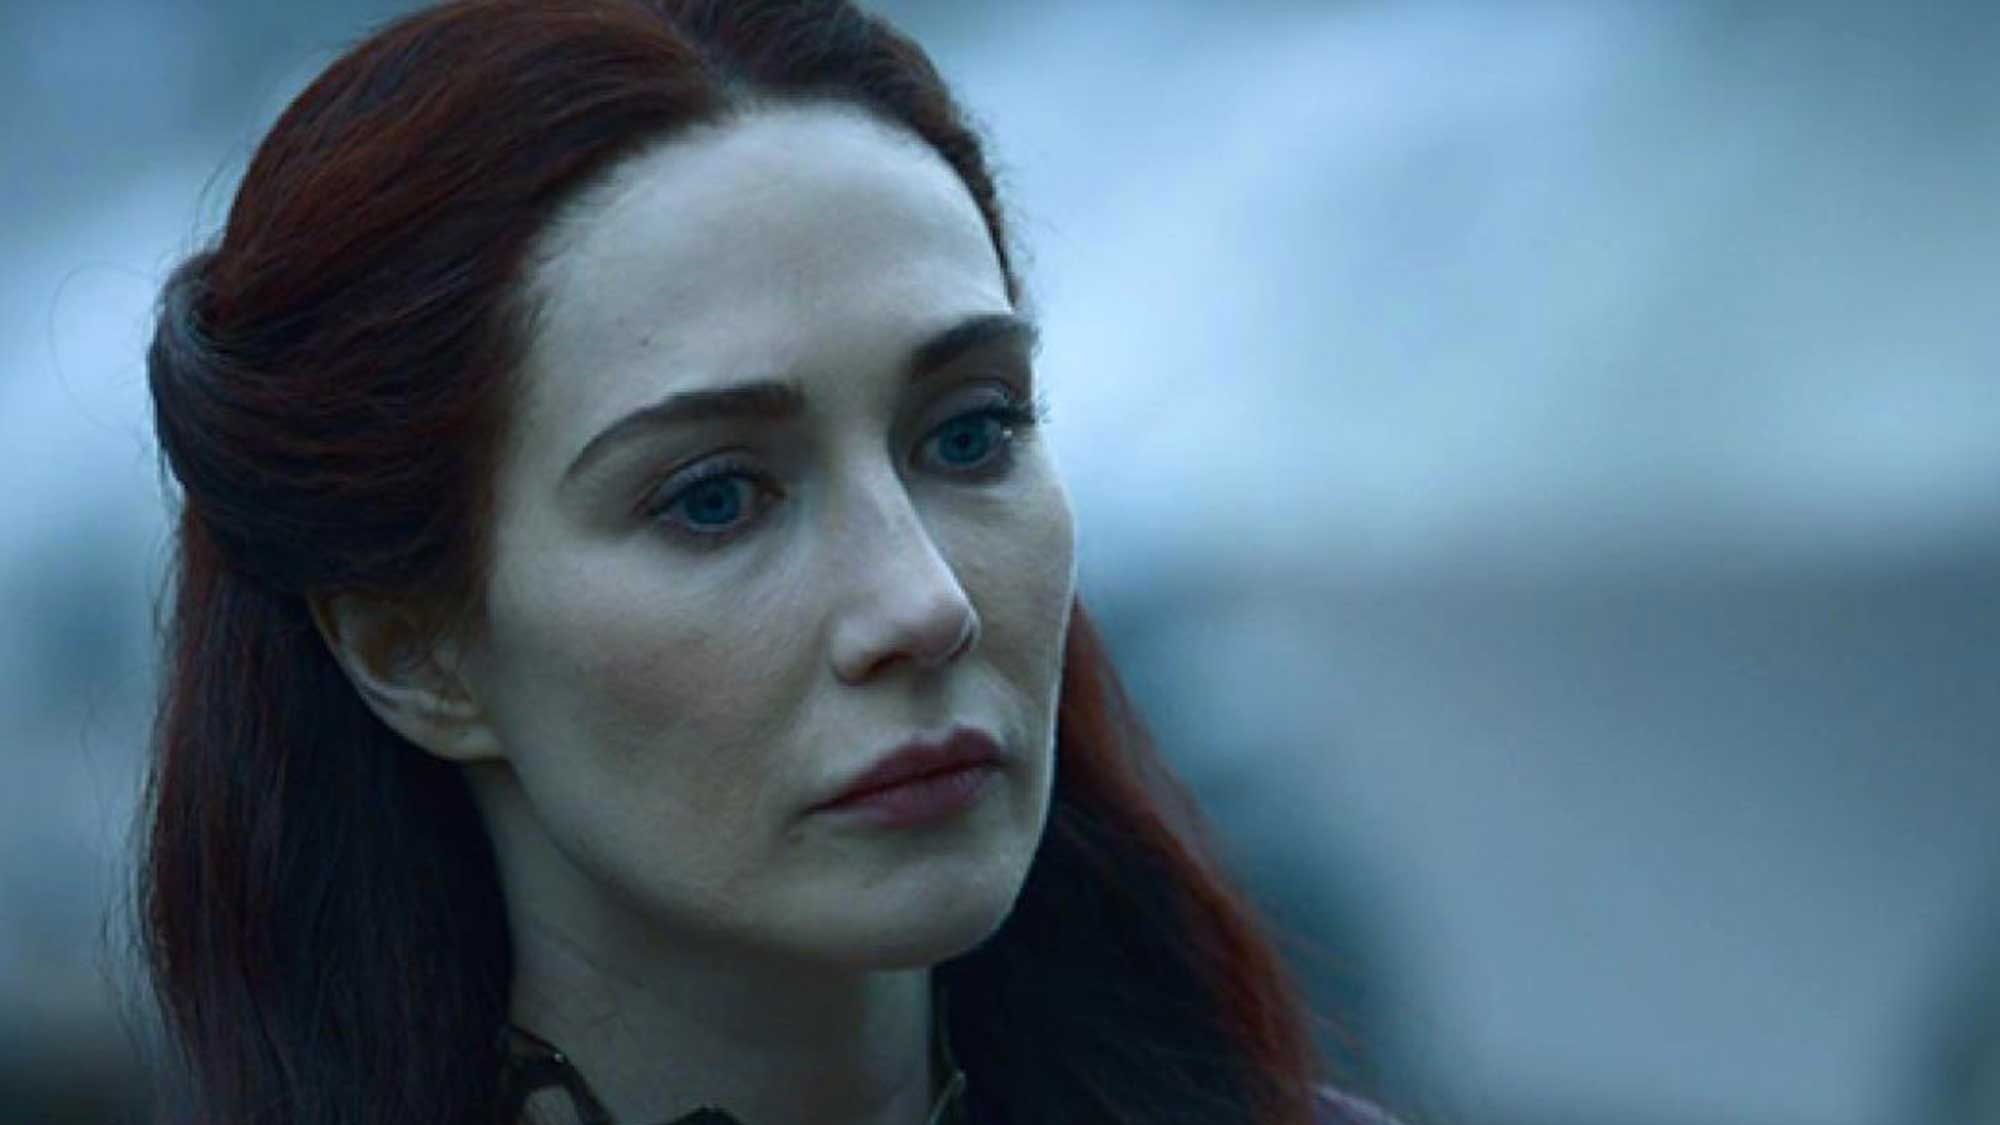 Carice van Houten : l'actrice de "Game of Thrones" arrêtée aux Pays-Bas